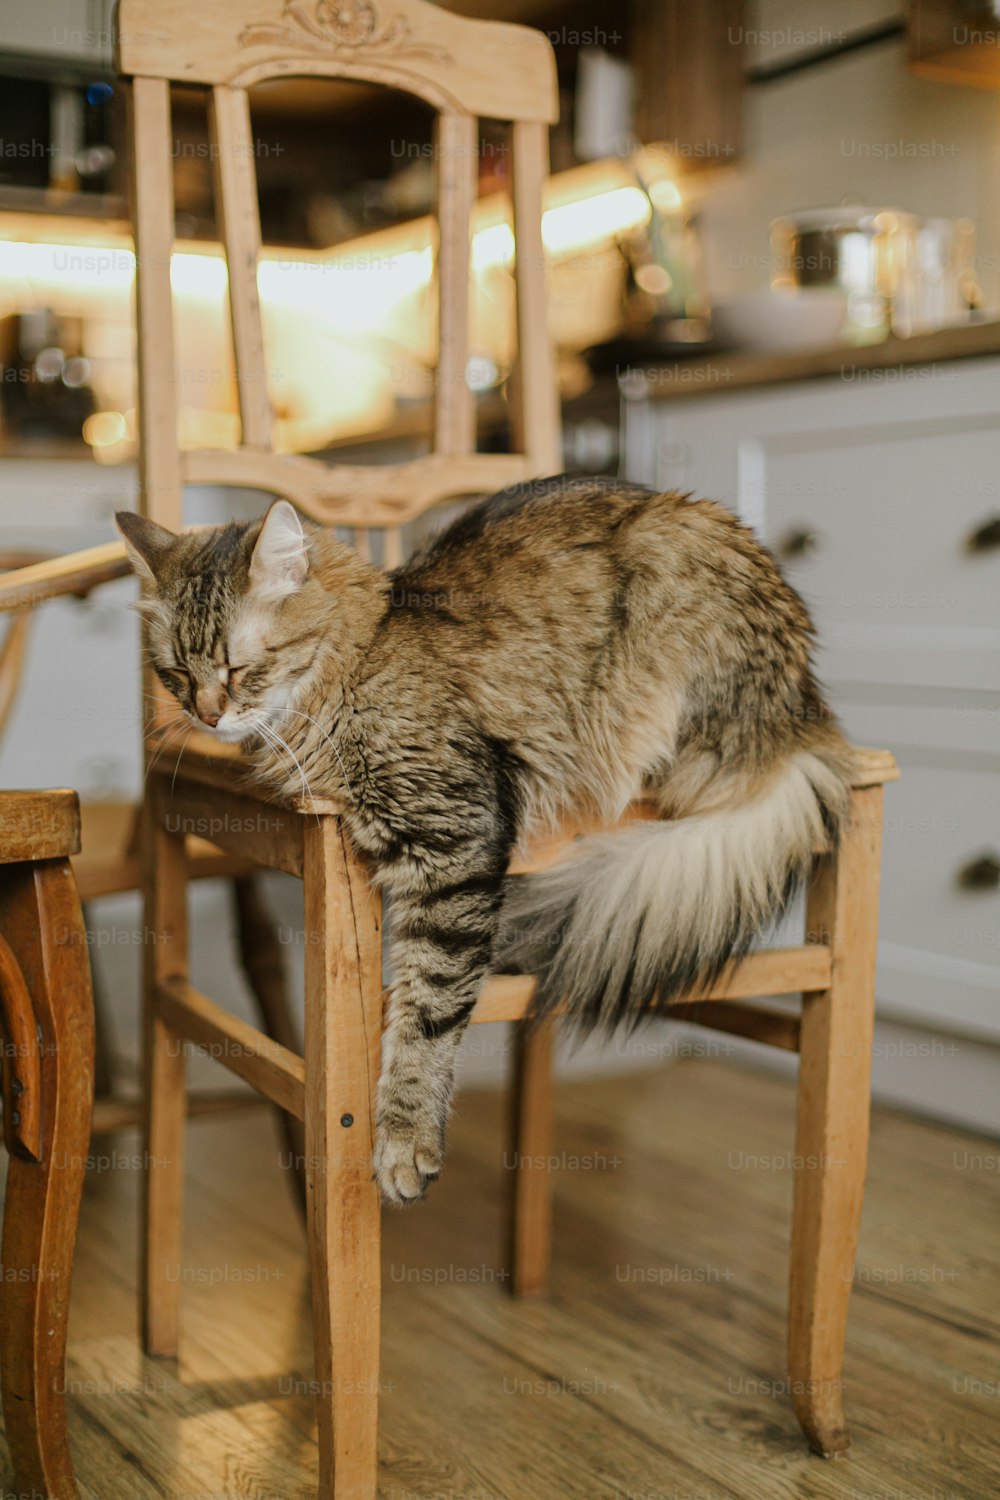 Gato tabby bonito sentado na cadeira de madeira rústica no fundo da cozinha moderna. Adorável Maine coon dormindo e relaxando na cadeira retrô em casa